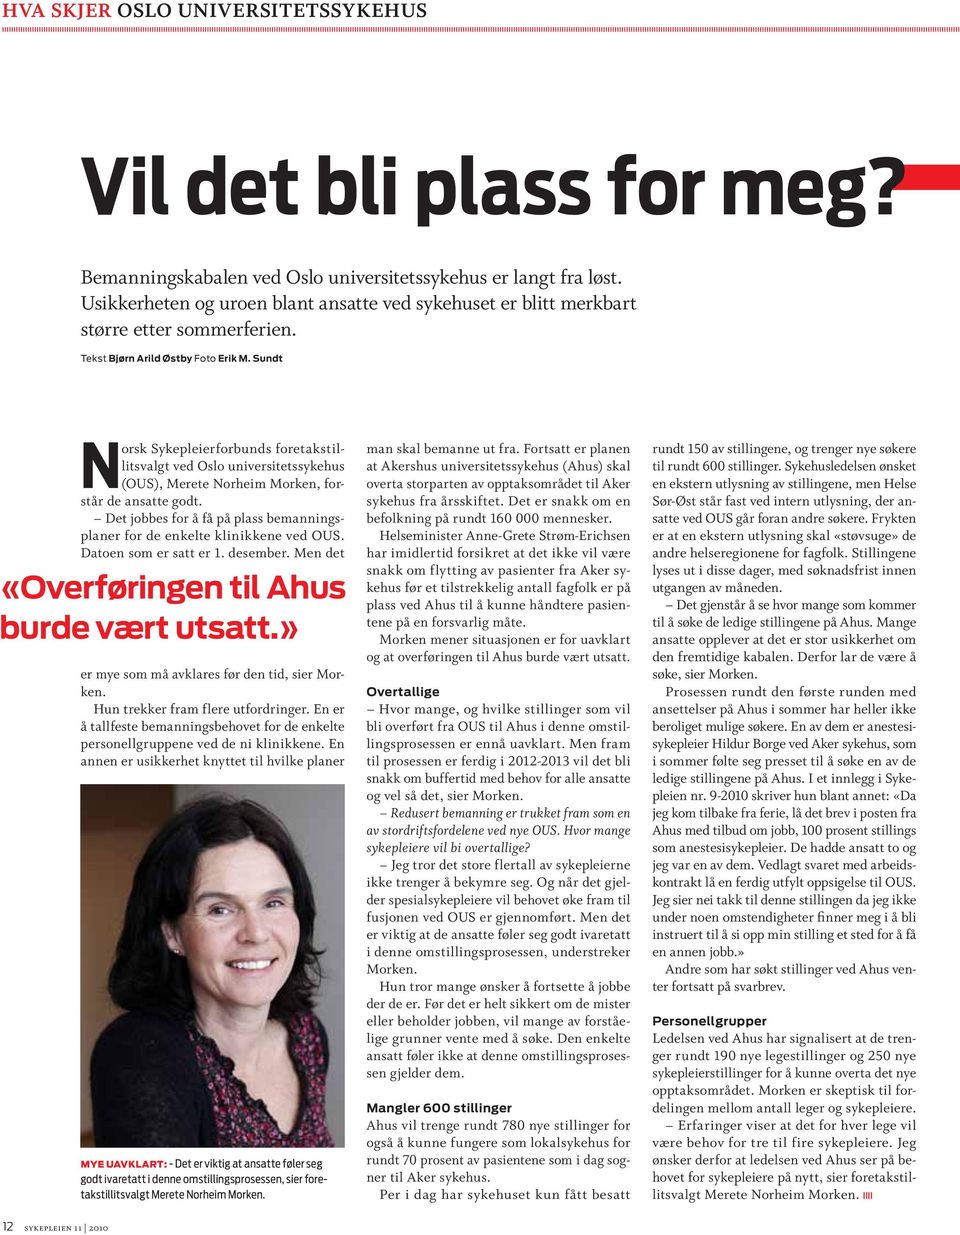 Sundt Norsk Sykepleierforbunds foretakstillitsvalgt ved Oslo universitetssykehus (OUS), Merete Norheim Morken, forstår de ansatte godt.